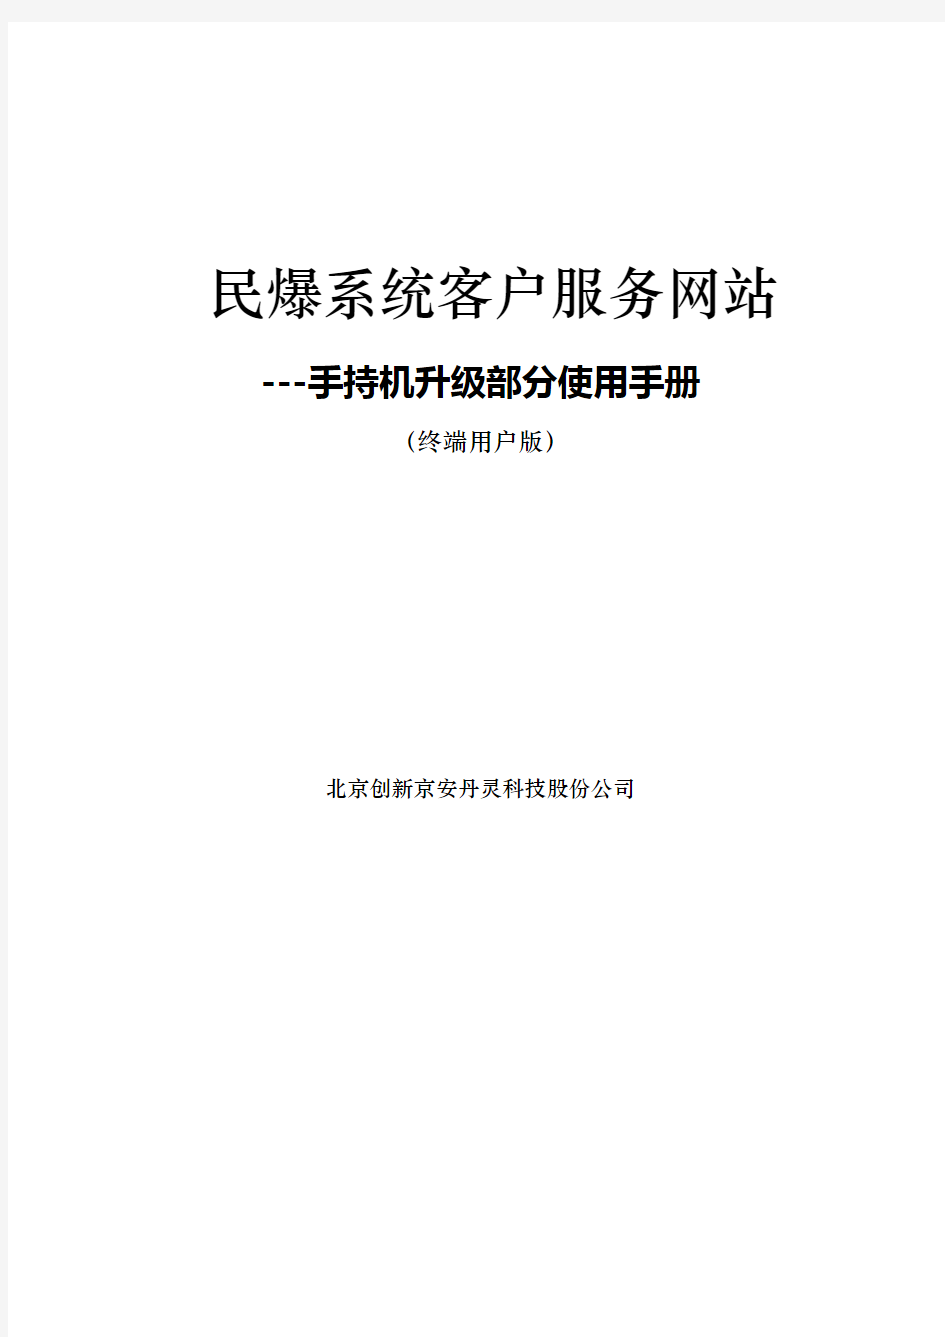 (2015-06-08)民爆手持机升级服务系统使用说明手册资料